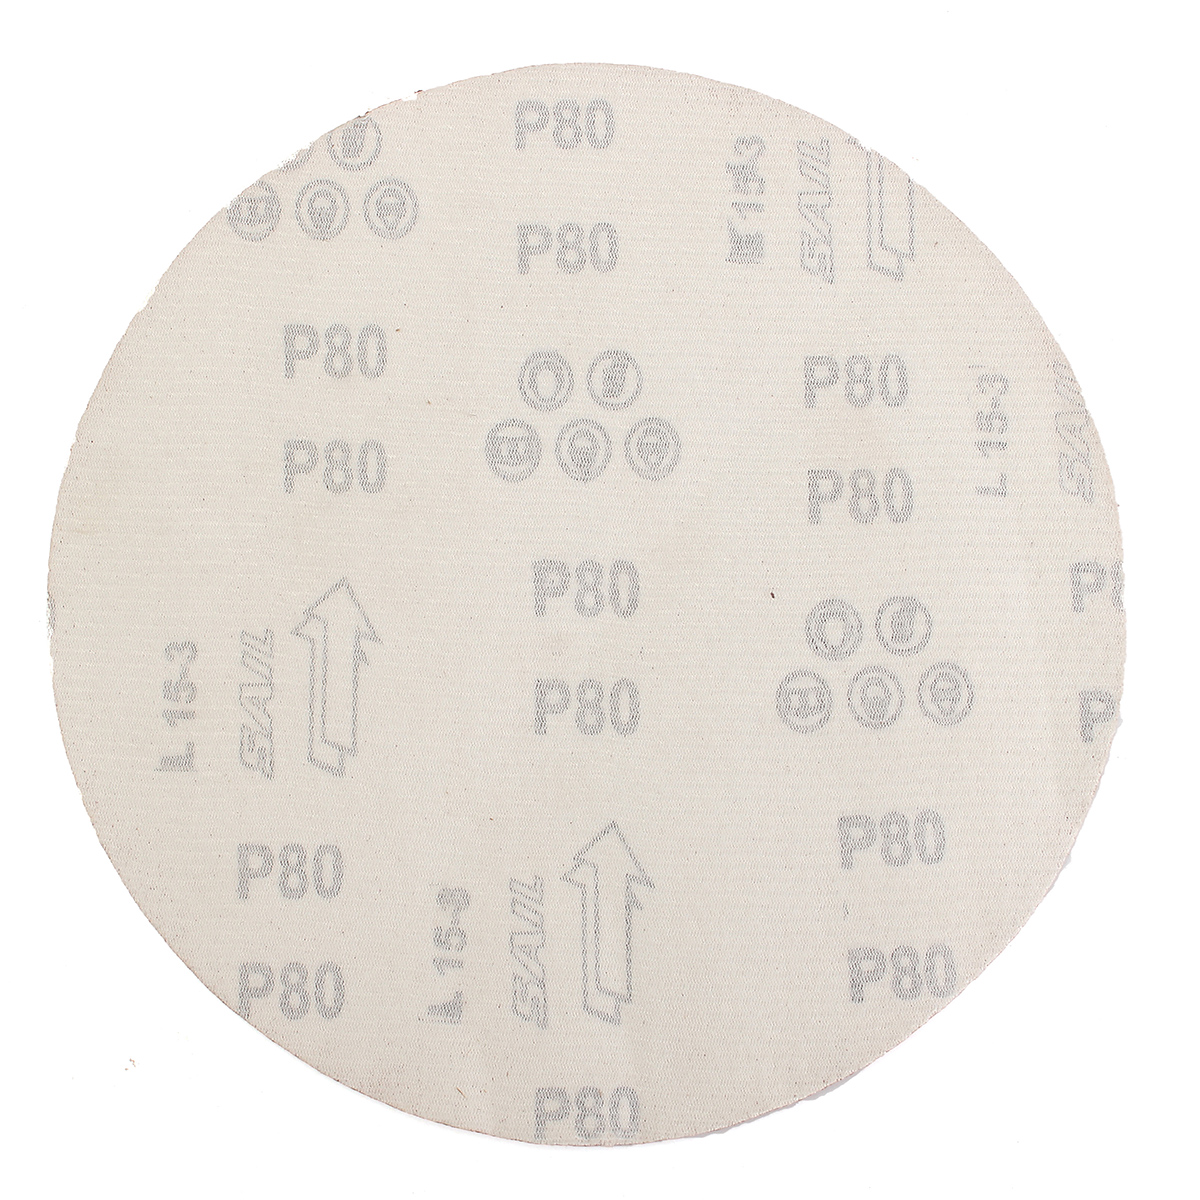 Drillpro--9-Inch-60-Grit-Aluminum-Oxide-Sanding-Polishing-Disc-Sandpaper-Abrasive-Tool-1603463-4